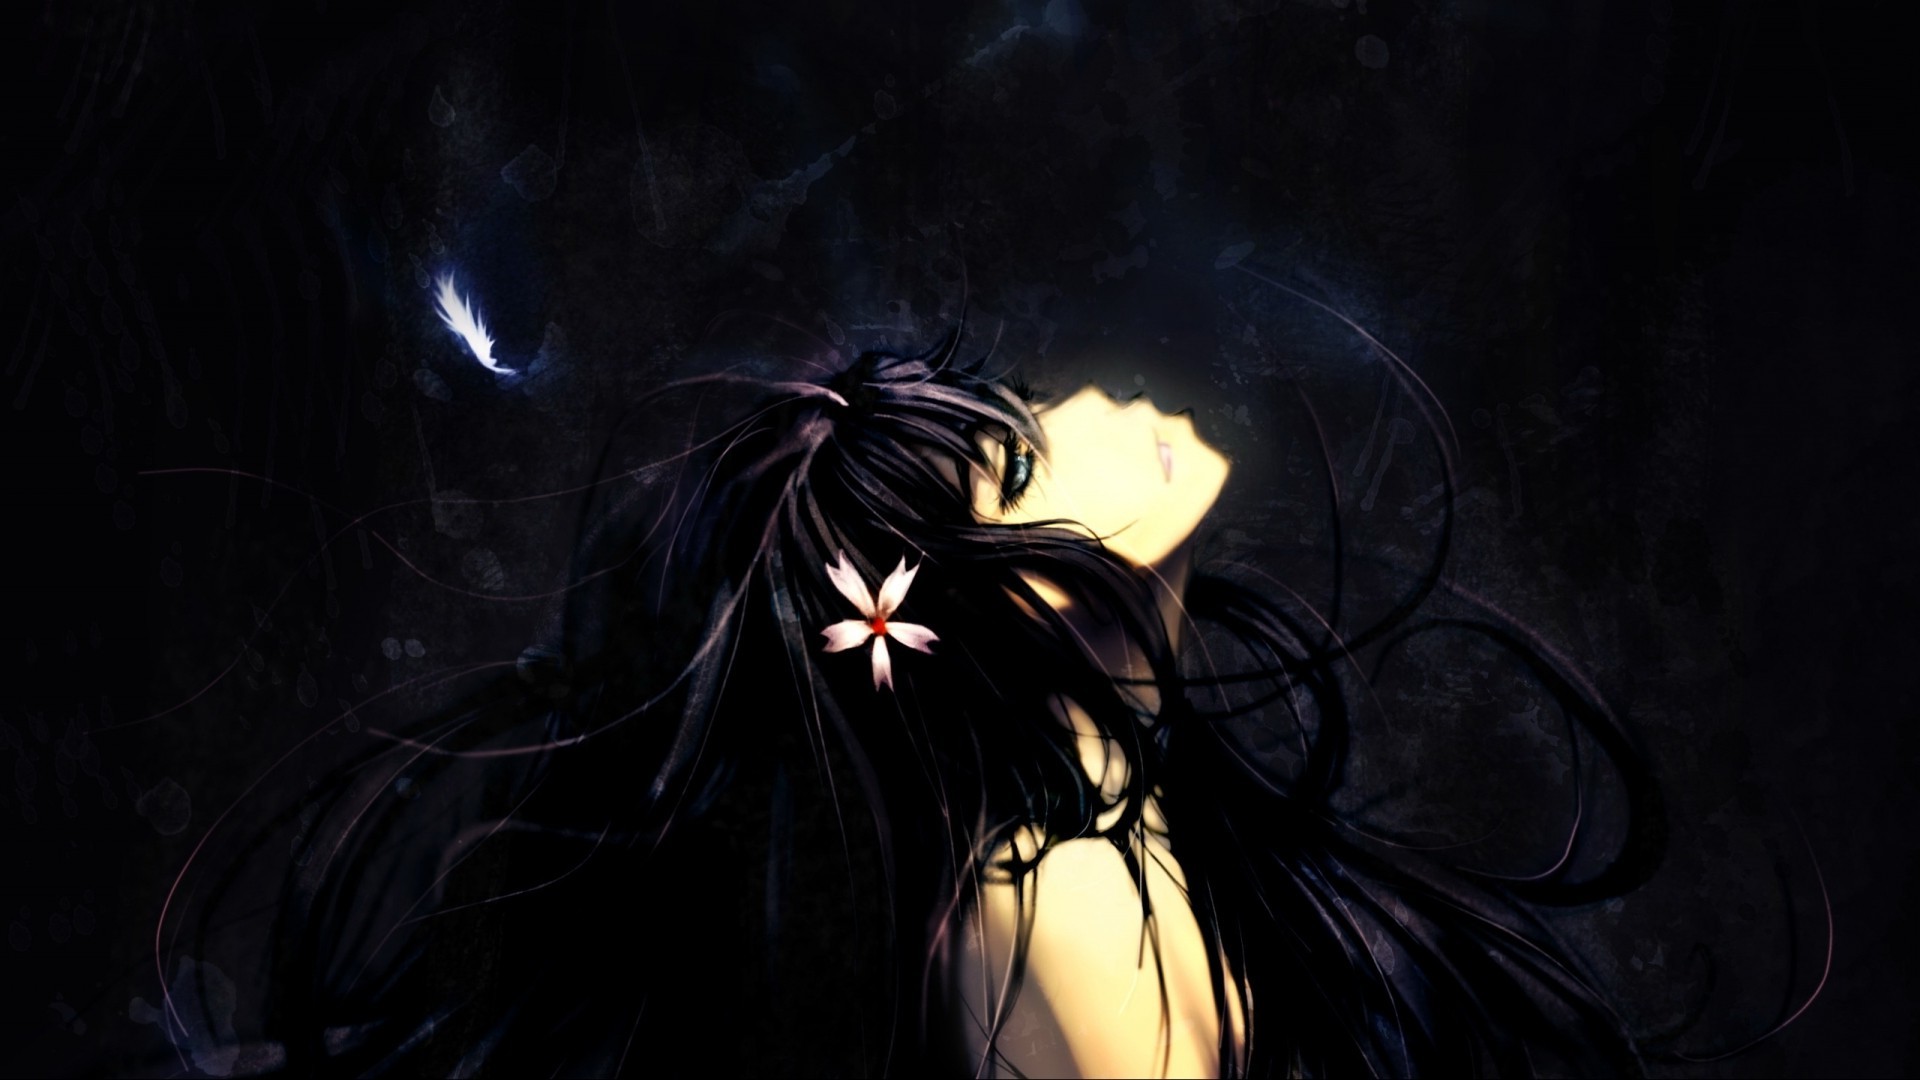 Dark Anime Wallpaper Hd - Anime Girl Wallpaper Dark , HD Wallpaper & Backgrounds